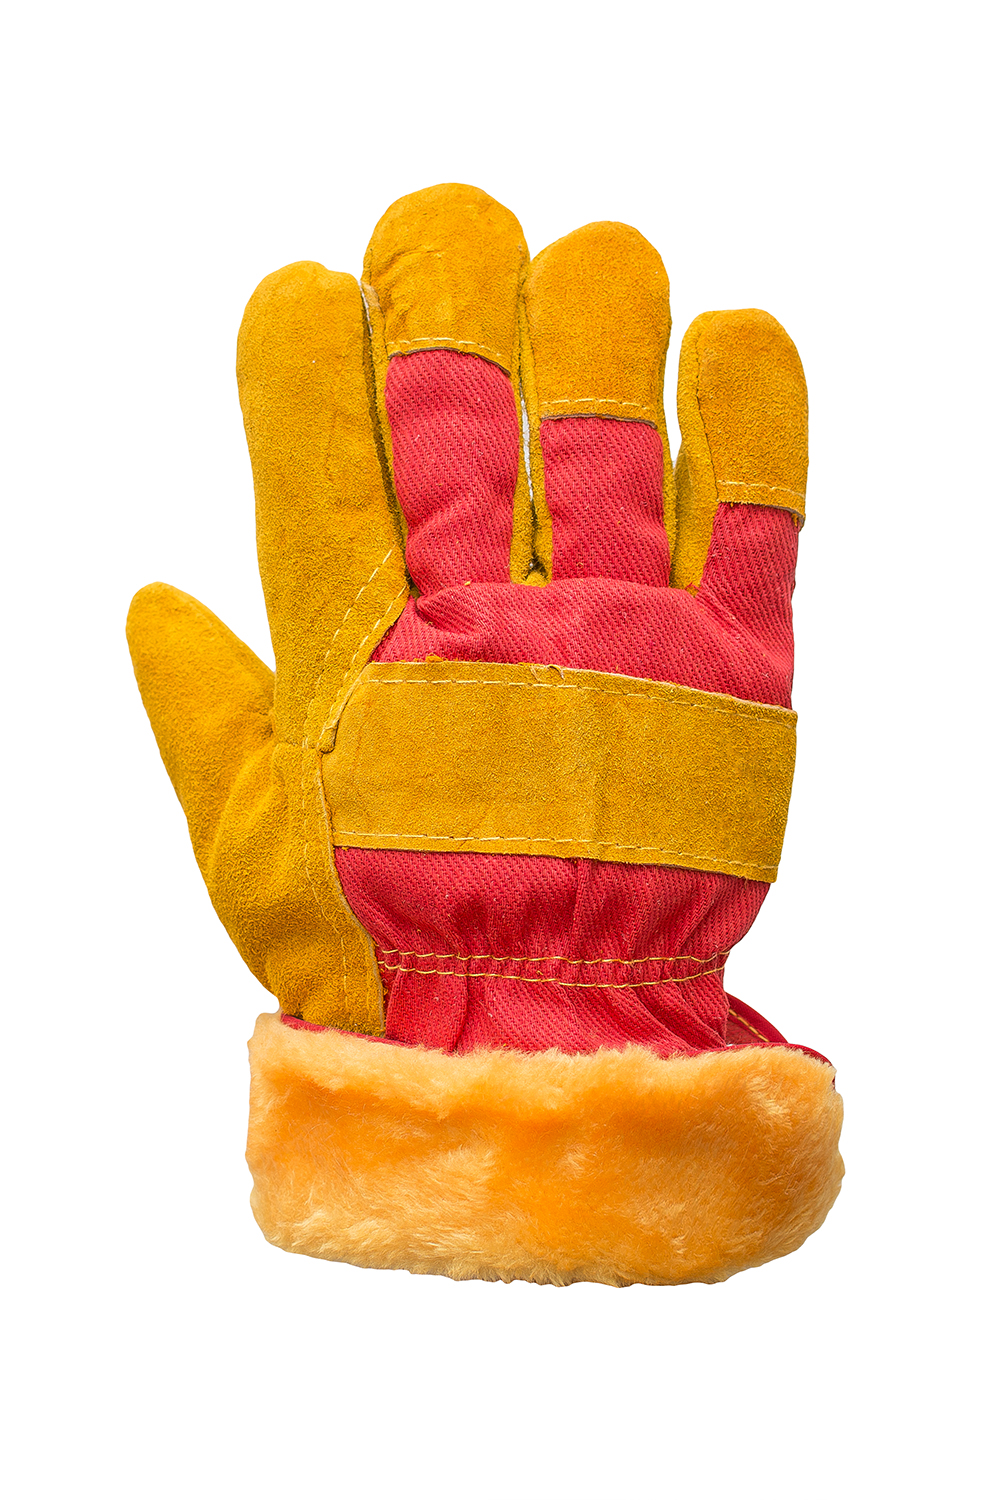 Перчатки спилковые комбинированные желто-красные, утепленные